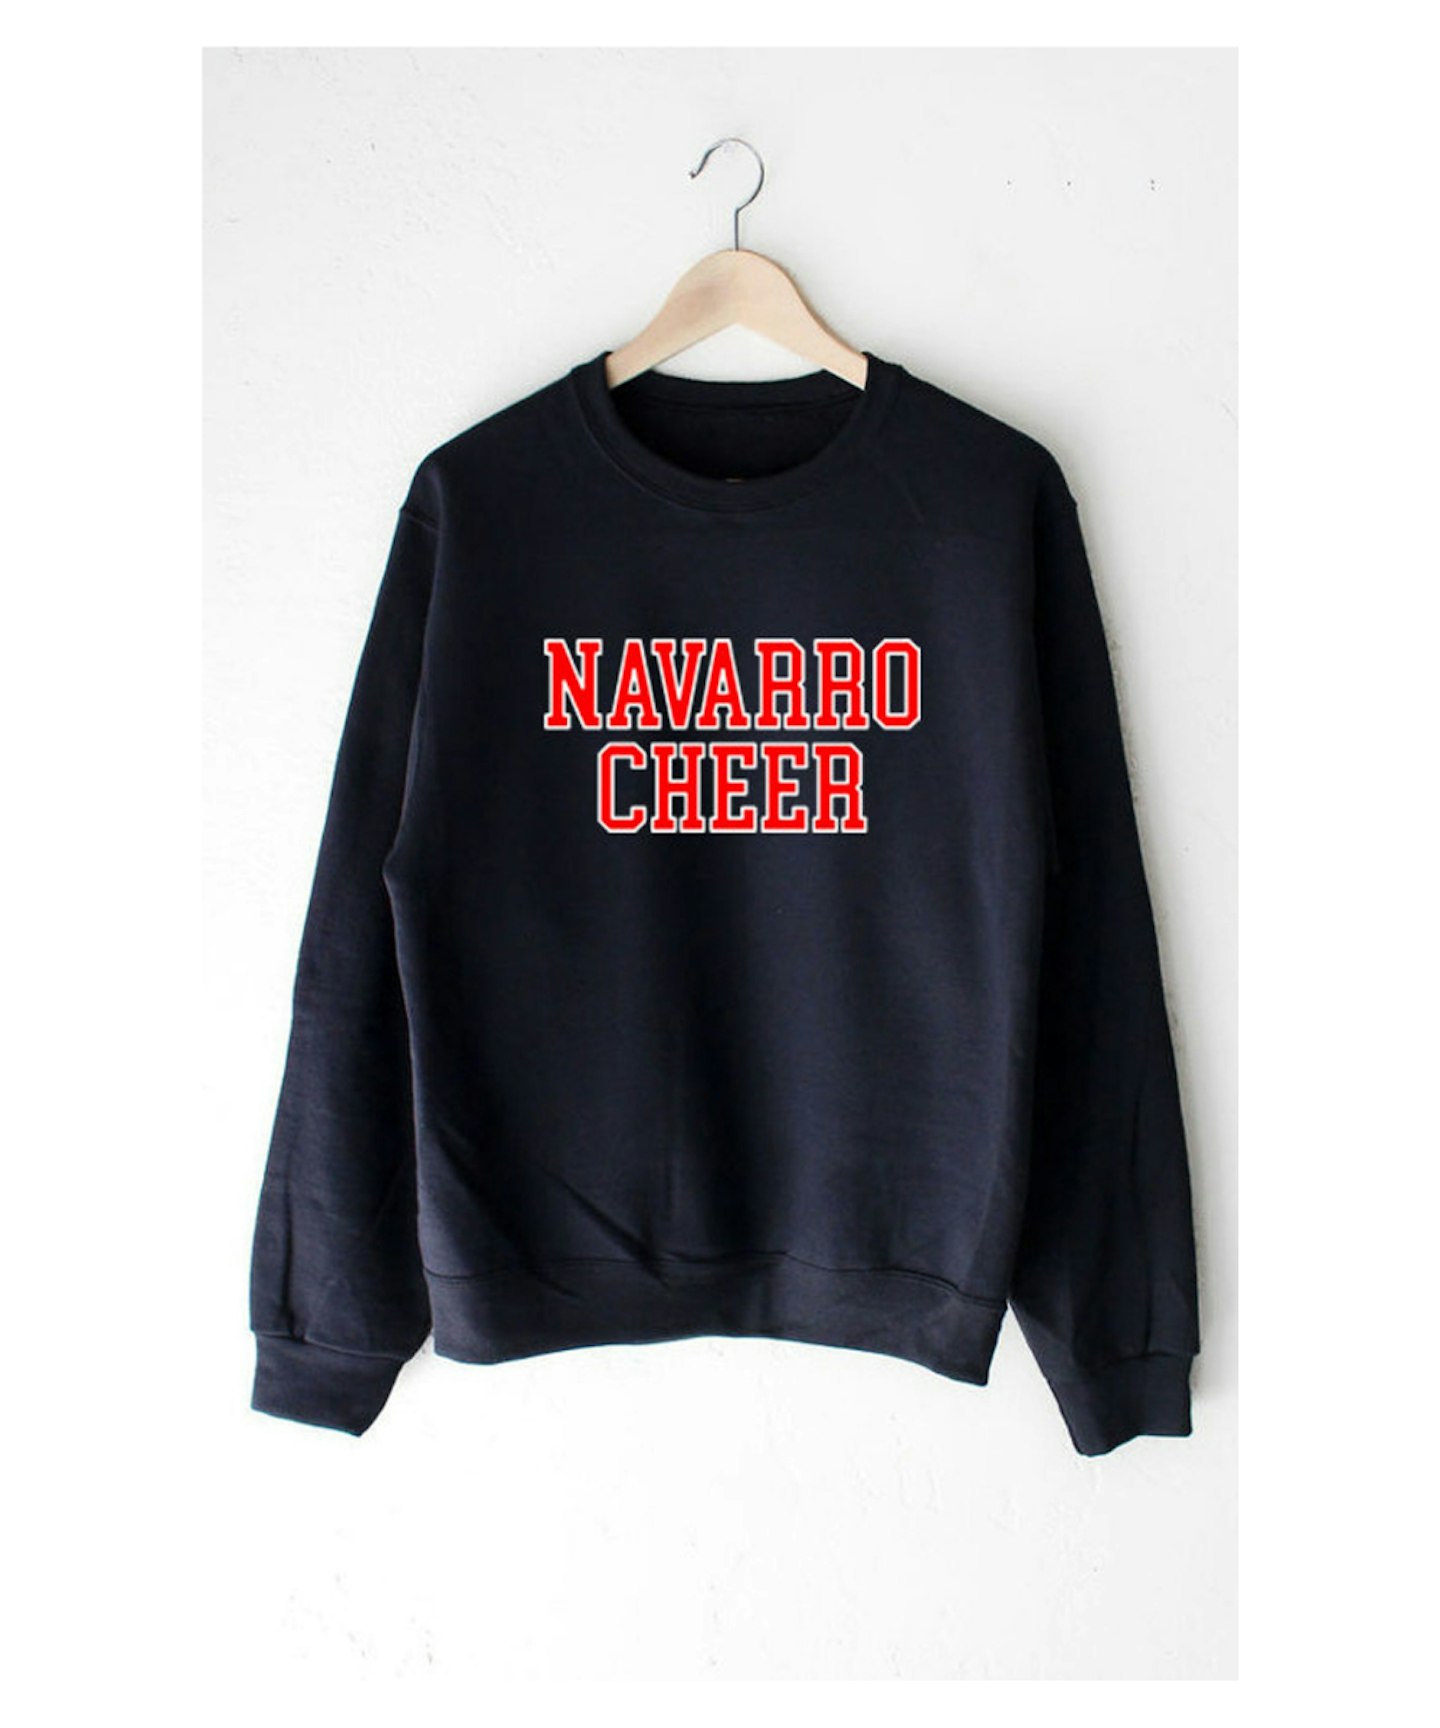 Navarro Cheer Sweatshirt